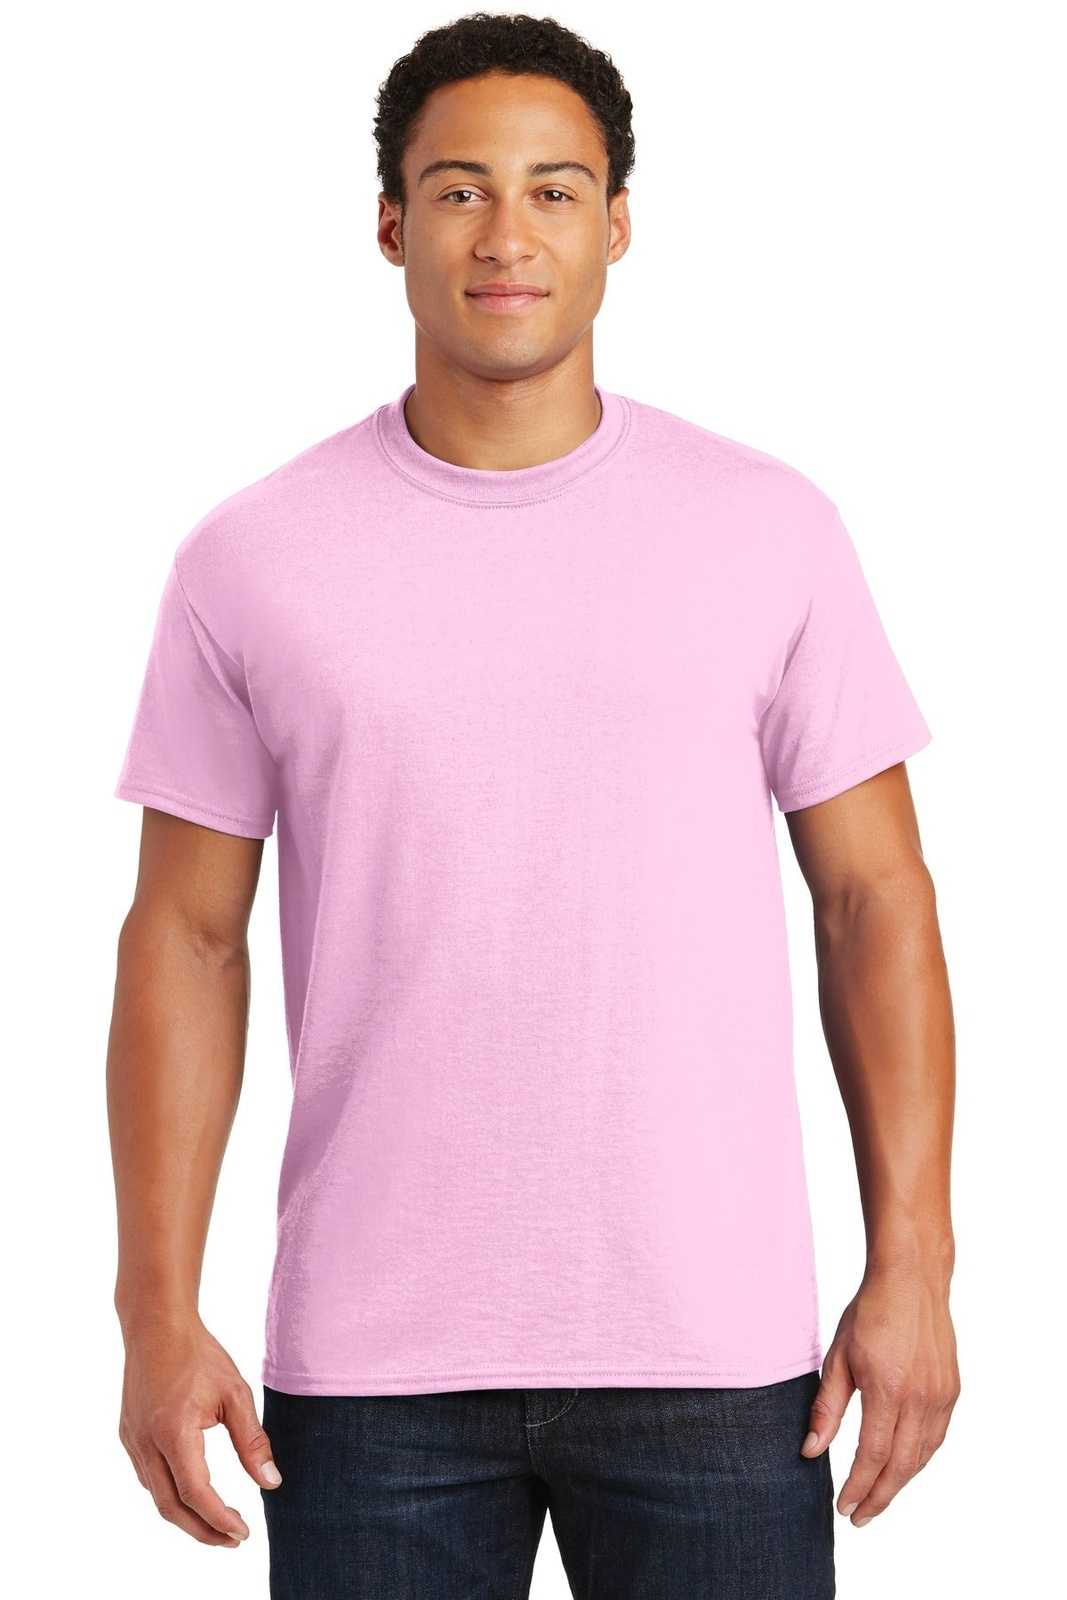 Gildan 8000 Dryblend 50 Cotton/50 Poly T-Shirt - Light Pink - HIT a Double